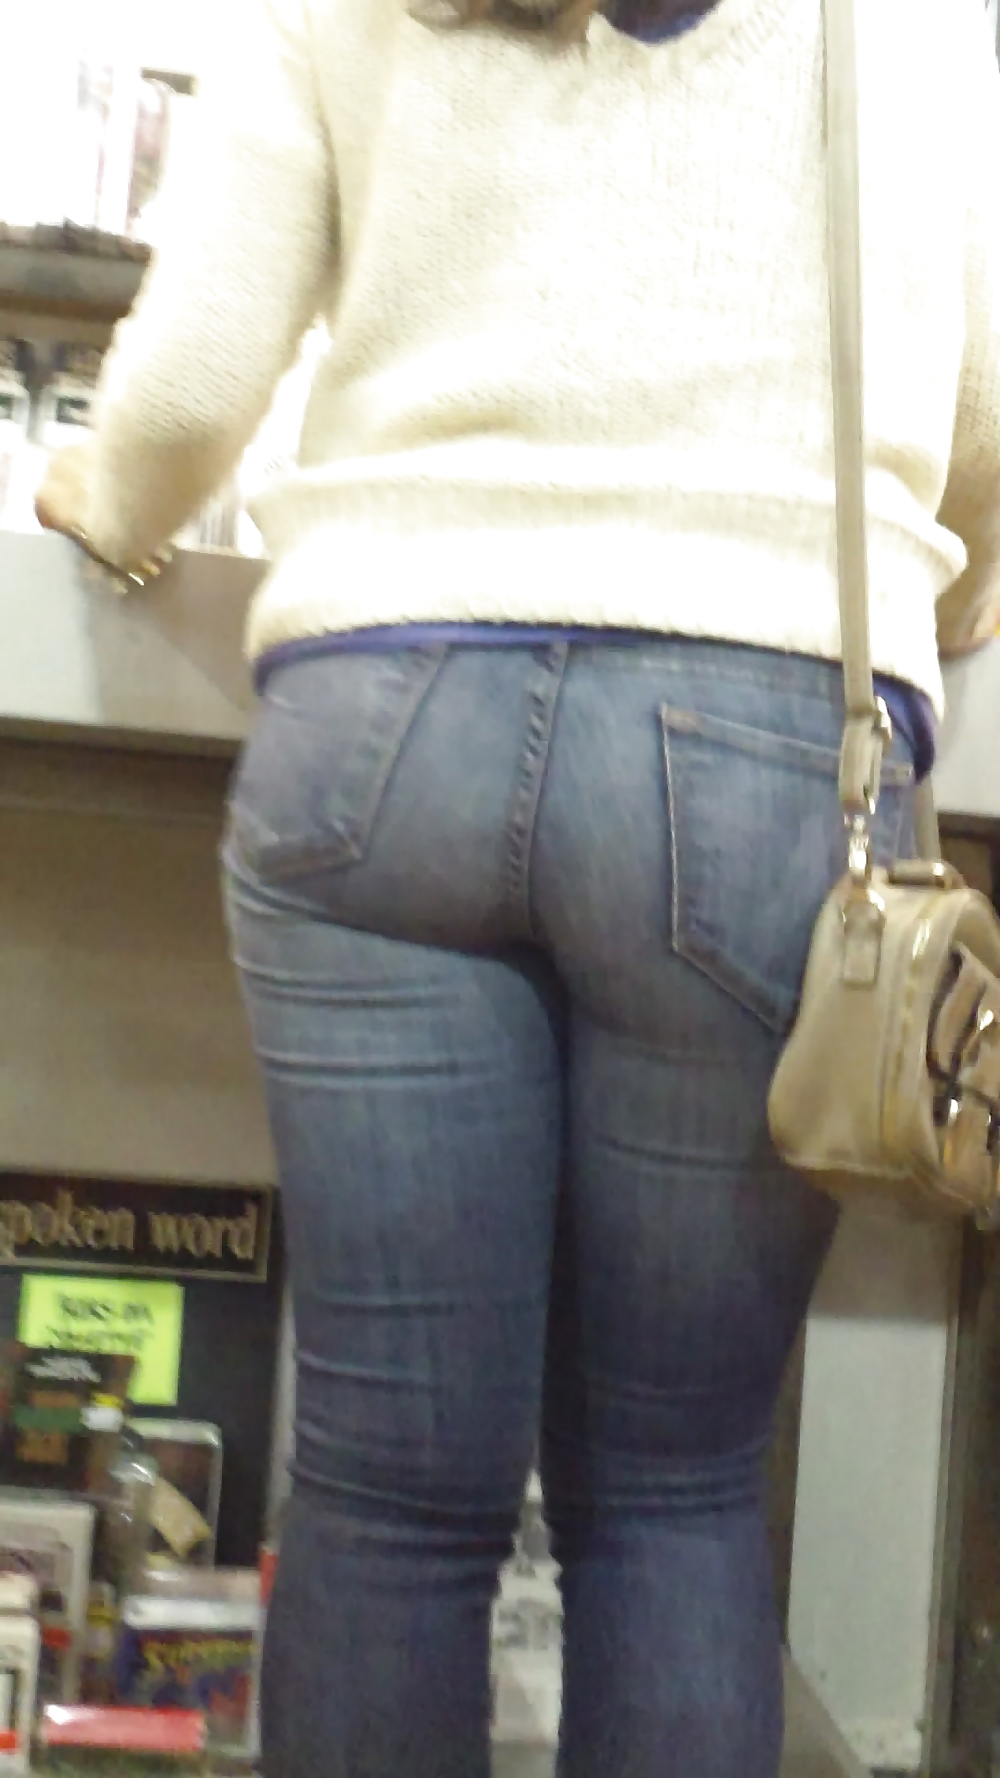 Smooth teen ass & butt in blue jeans #20904526